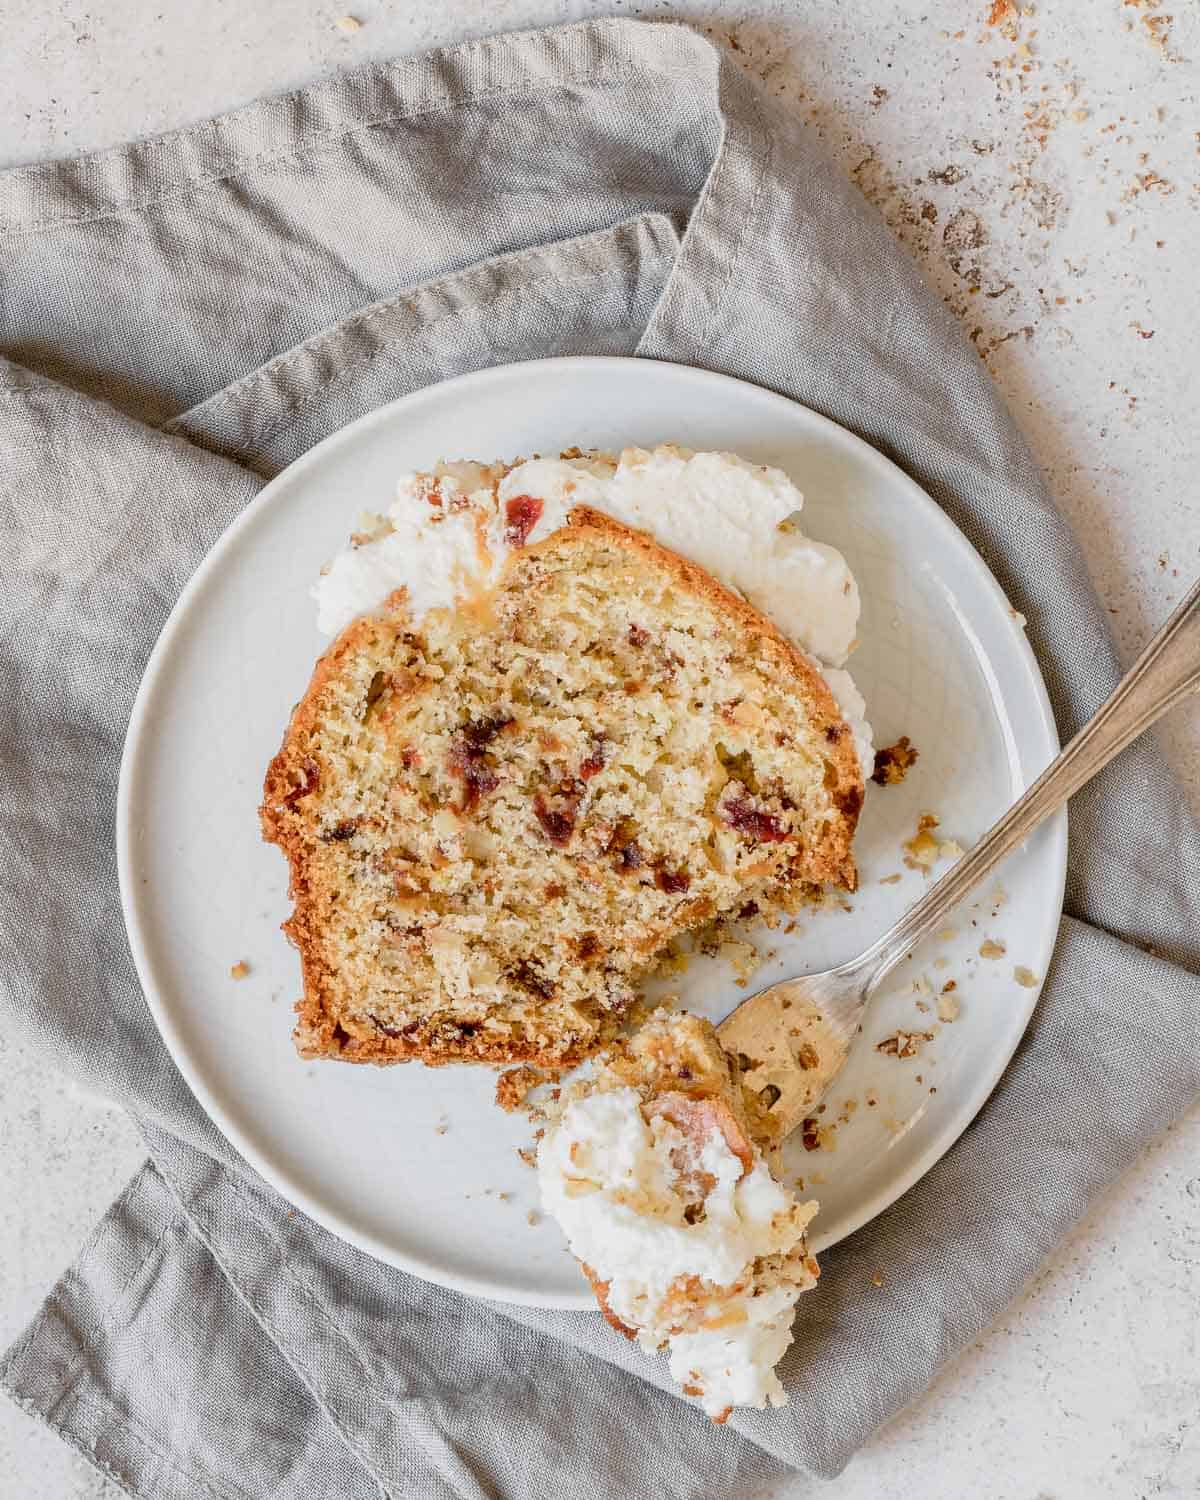 Una fetta di plumcake alla frutta disidratata con noci e mandorle-su-un-piatto-bianco-che-mostra-i-frutti-all'interno-del-plumcake-è-guarnito-con-panna-montata-fresca-e-caramello-C'è-la-forchetta-con-un-pezzo-di-torta-sul-piatto-